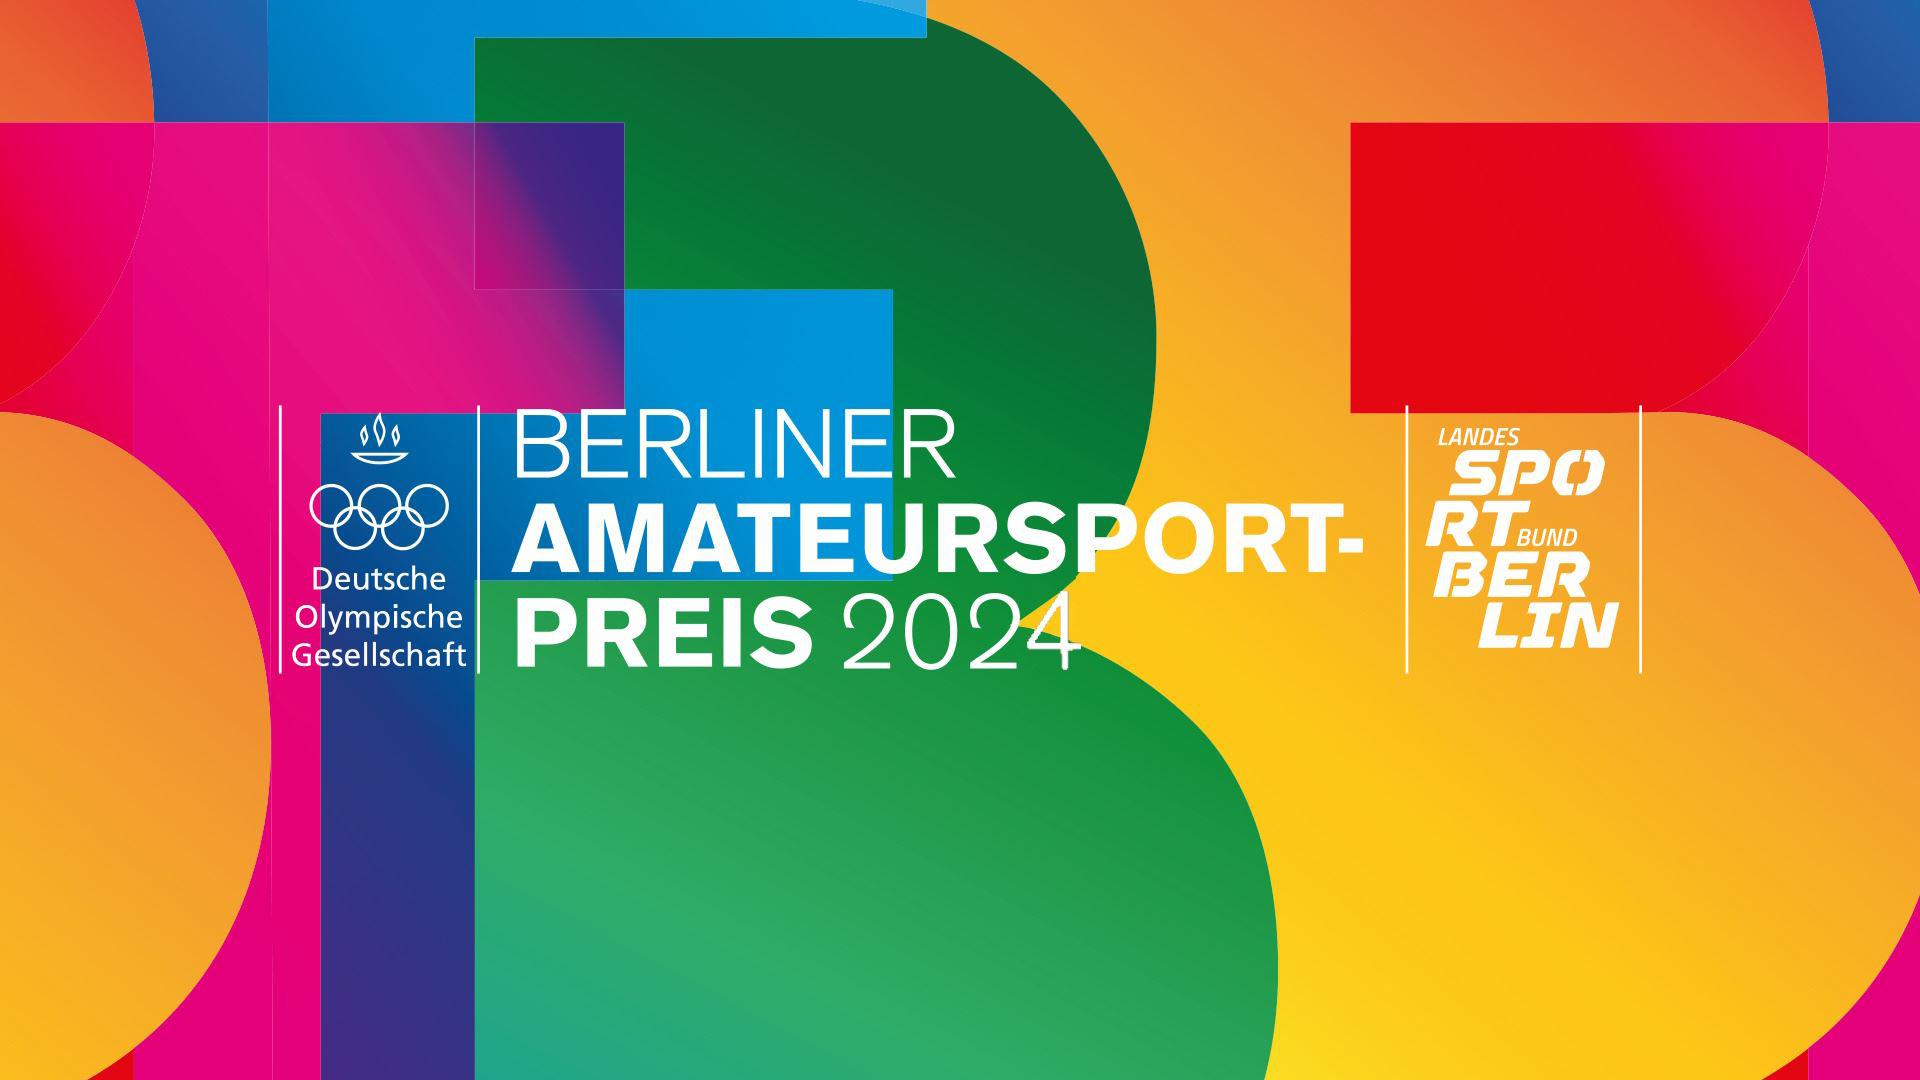 Die 1. Frauen sind für den Berliner Amateursport-Preis 2024 nominiert